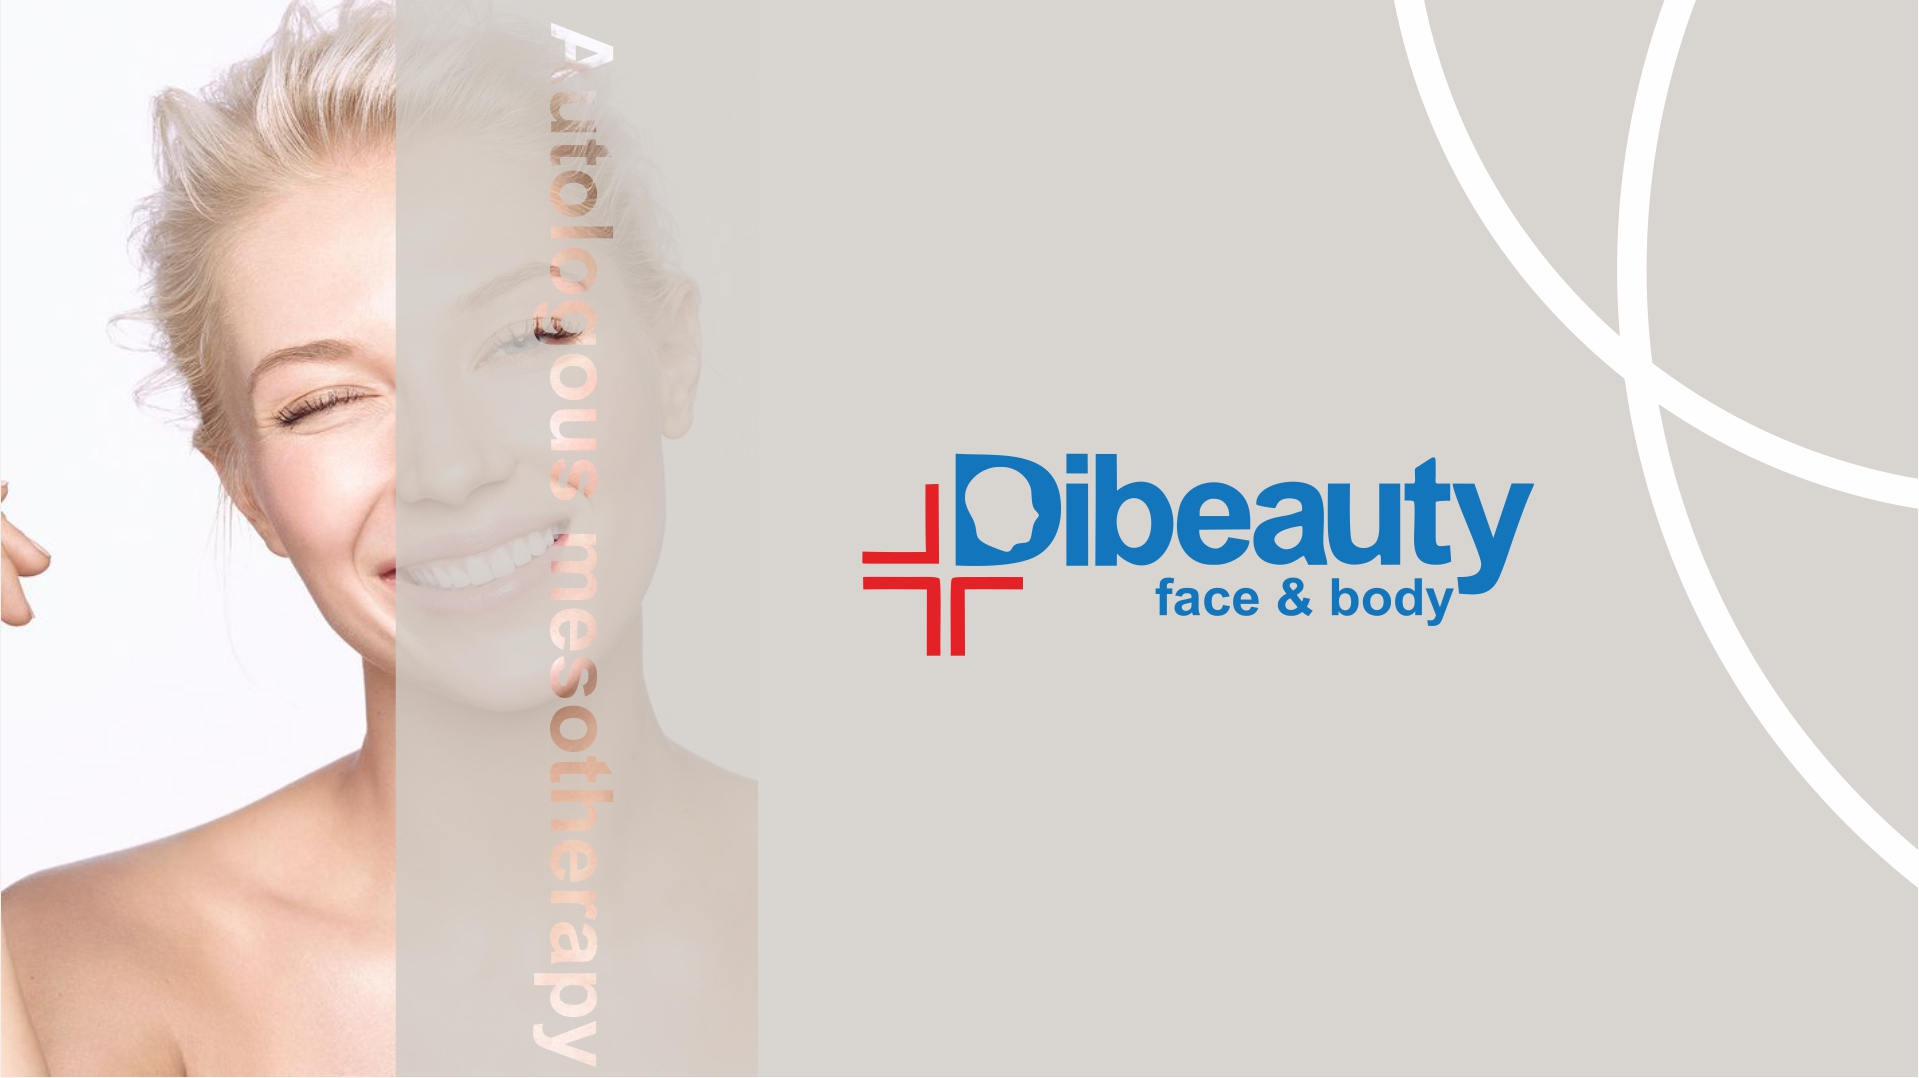 Αυτόλογη μεσοθεραπεία σε γελαστό γυναικείο πρόσωπο στα κέντρα DiBeauty face and body, αναζωογονώντας και ενισχύοντας την φυσική ομορφιά.